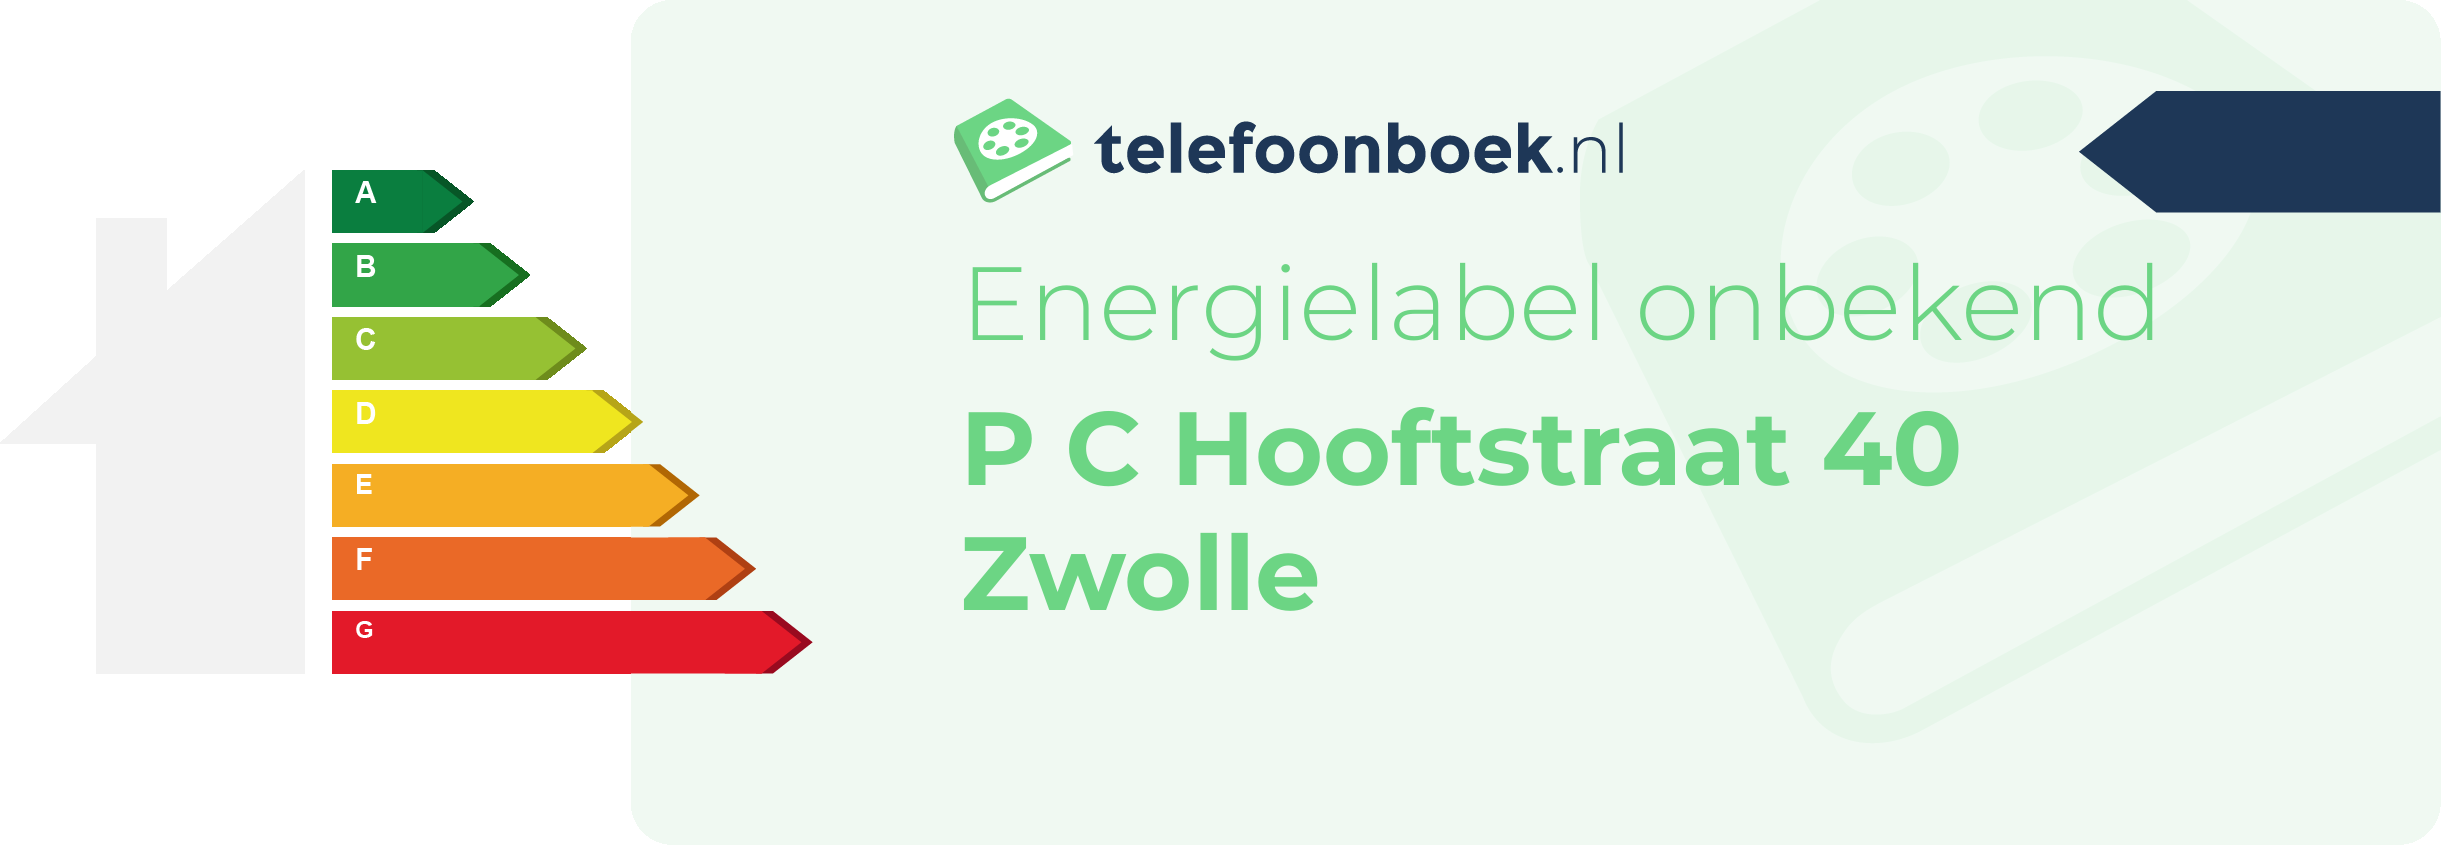 Energielabel P C Hooftstraat 40 Zwolle